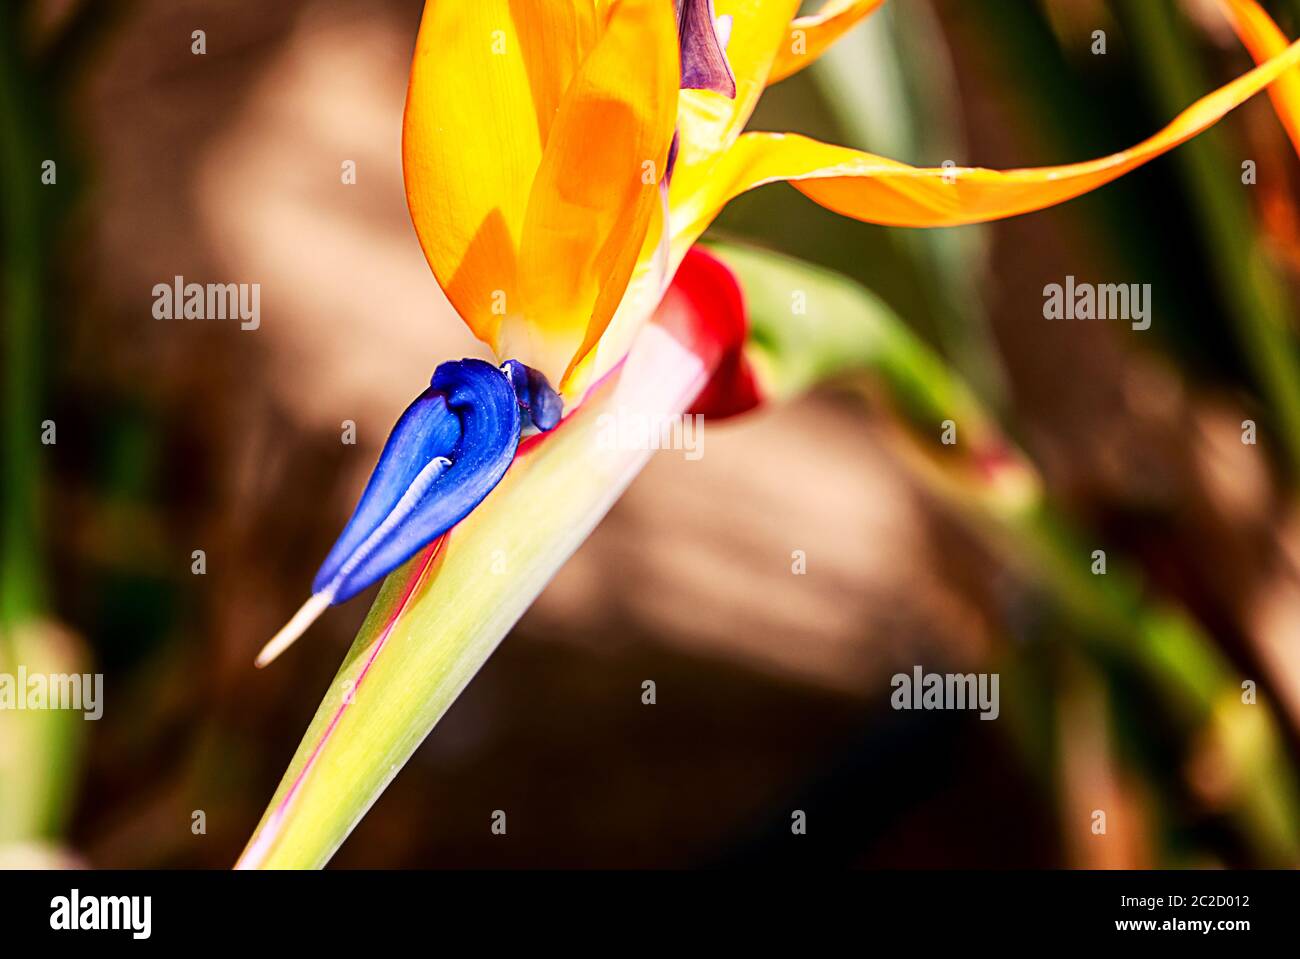 Bird of paradise, exotic strelitzia in a tropical garden Stock Photo